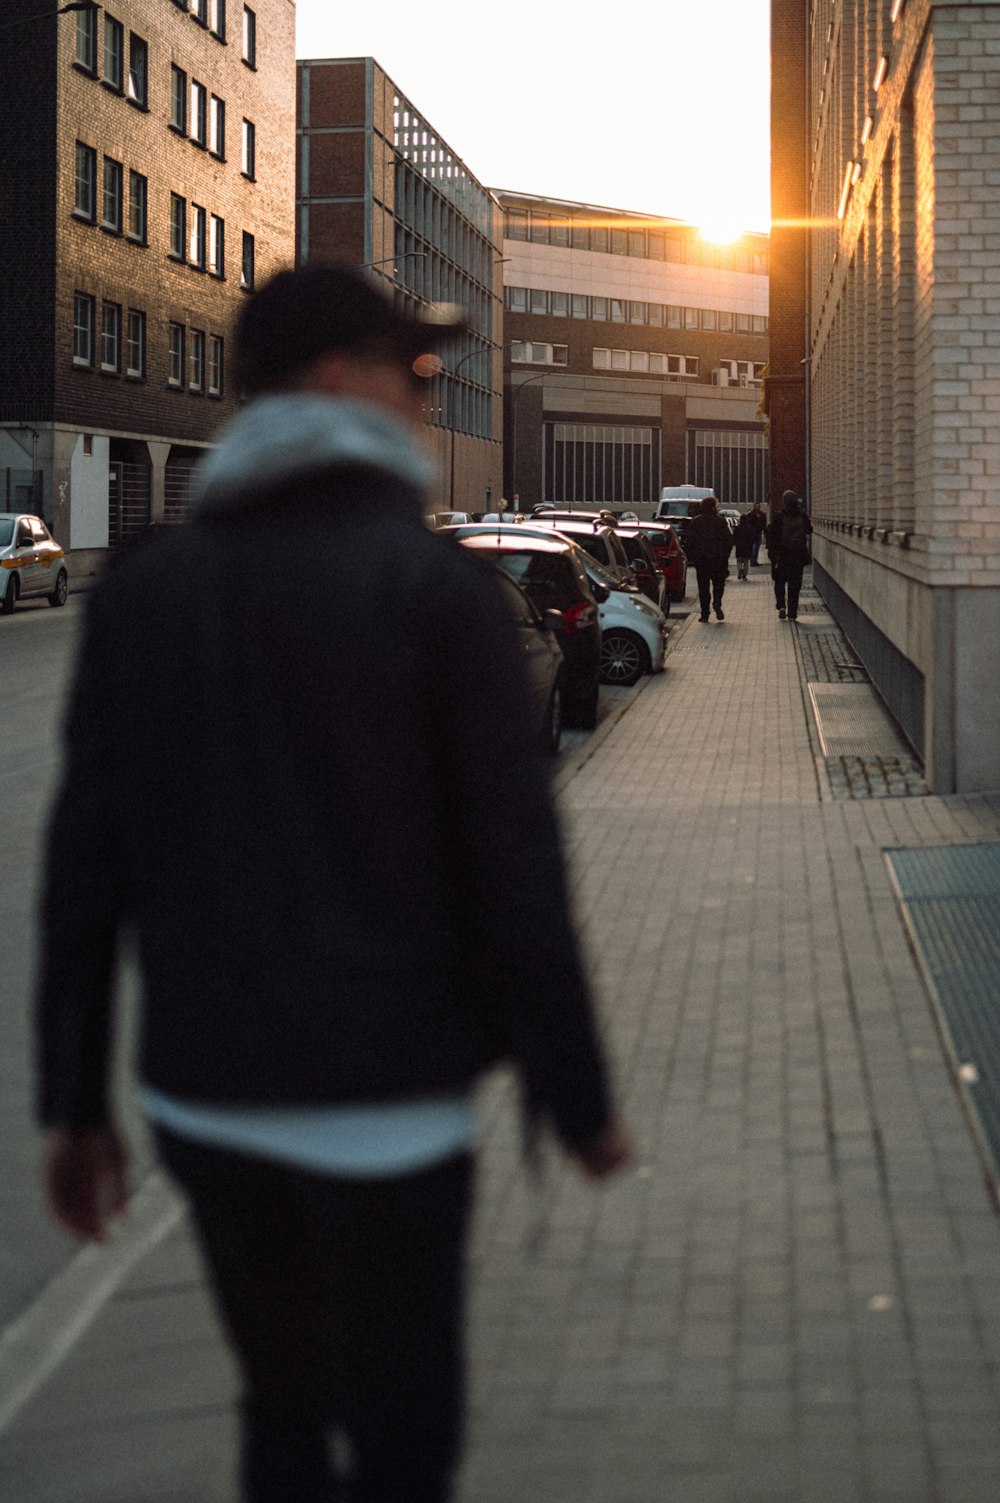 a person walking on a sidewalk